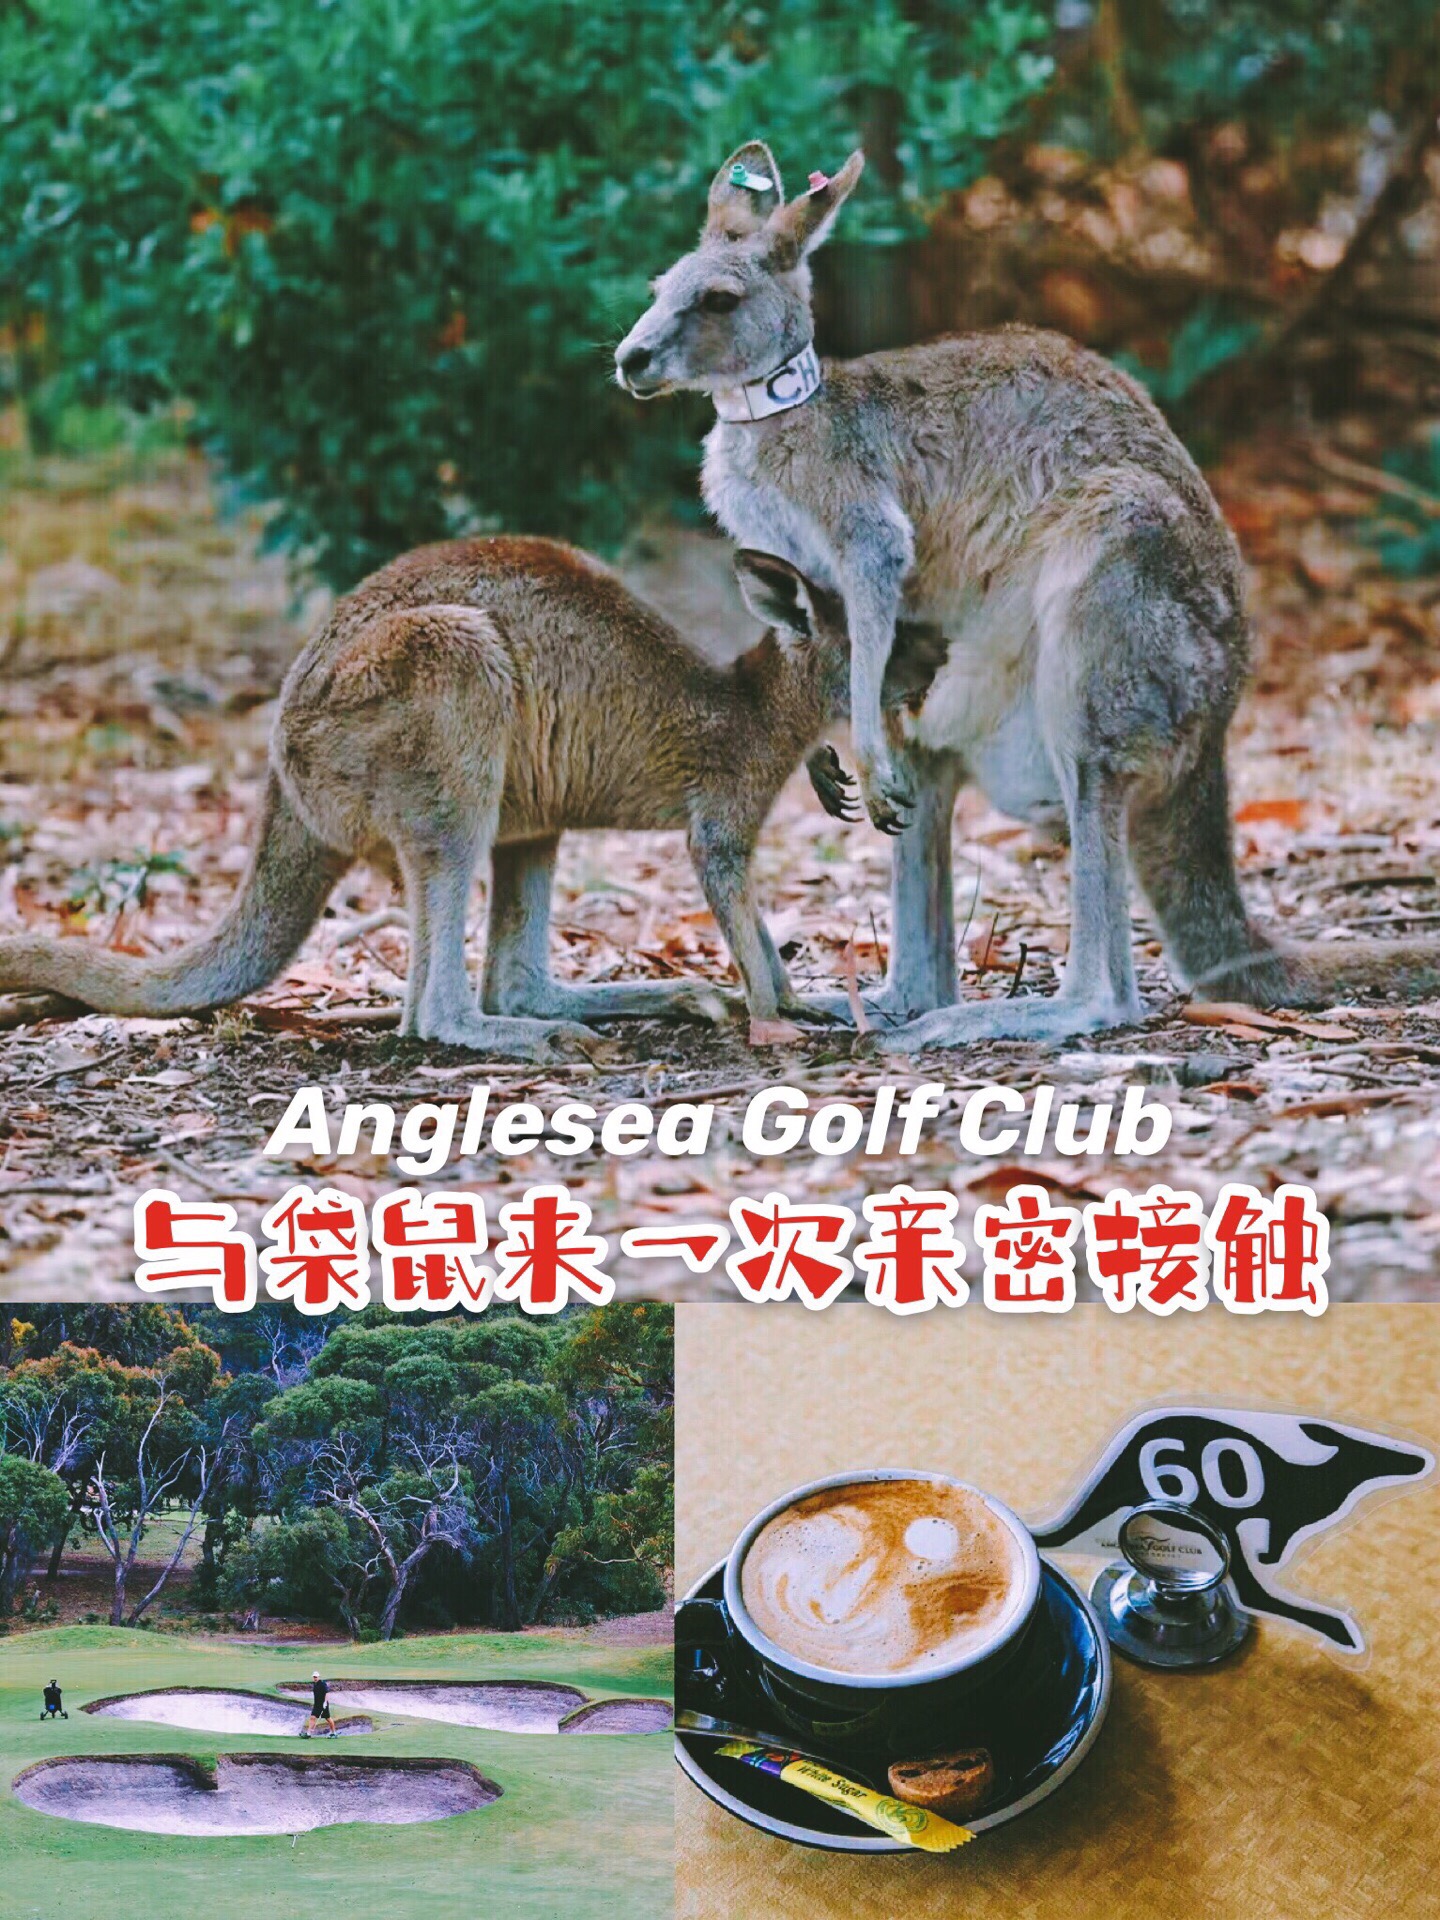 【Anglesea Golf Club，与袋鼠来一次亲密接触】 自驾大洋路回程墨尔本的路上，慕名去了